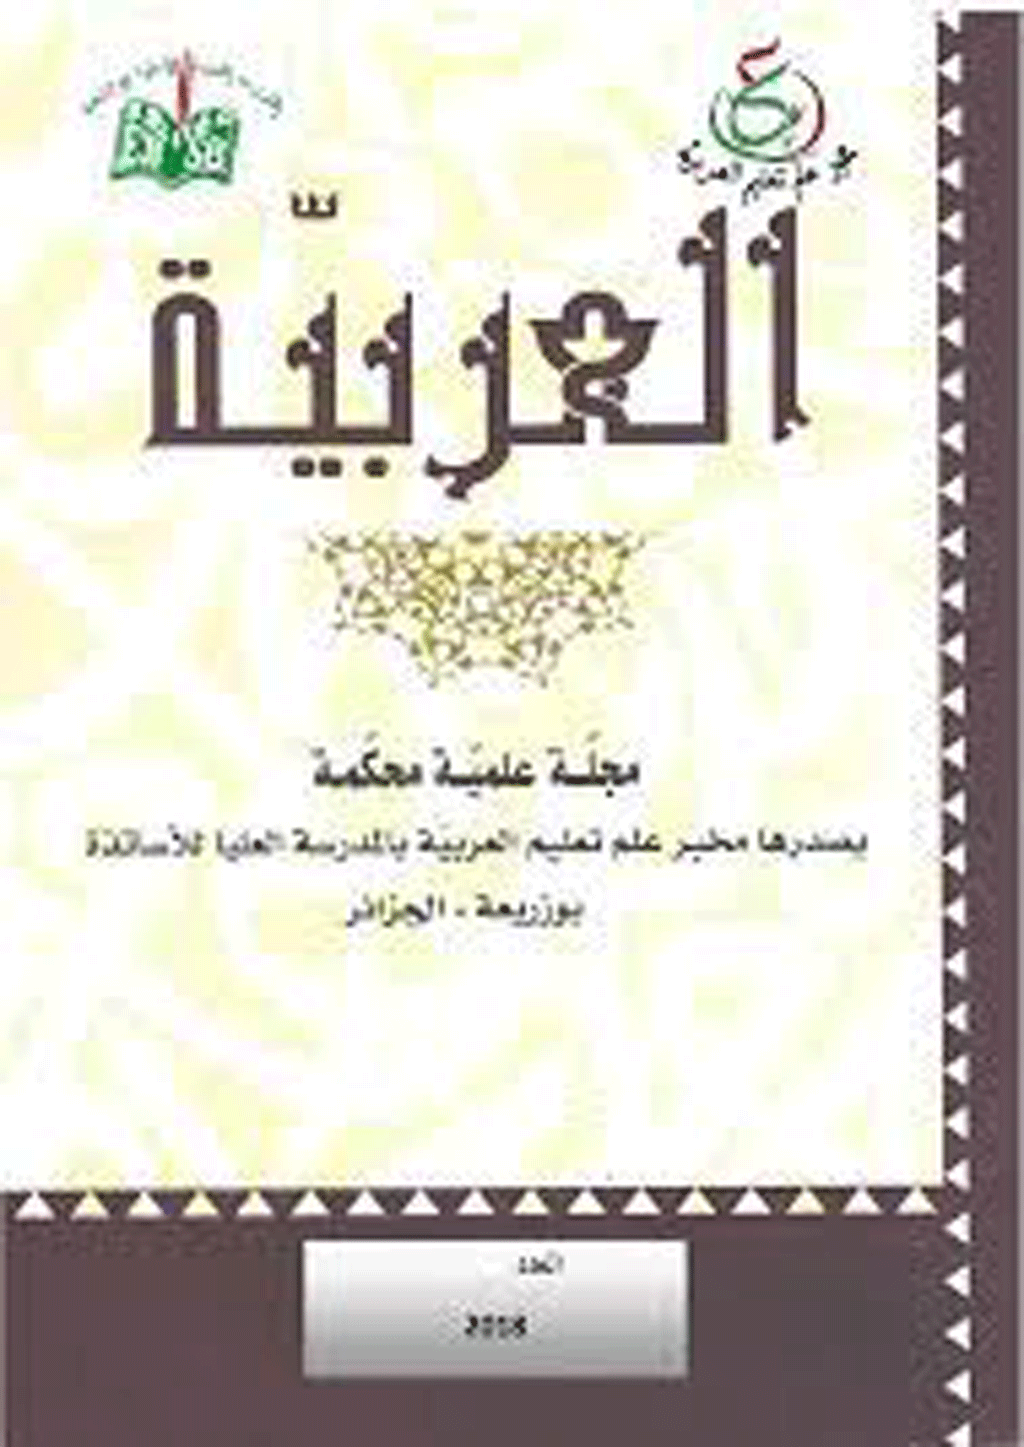 العربية (مخبر علم تعليم العربية) - السنة 2011 - العدد 4